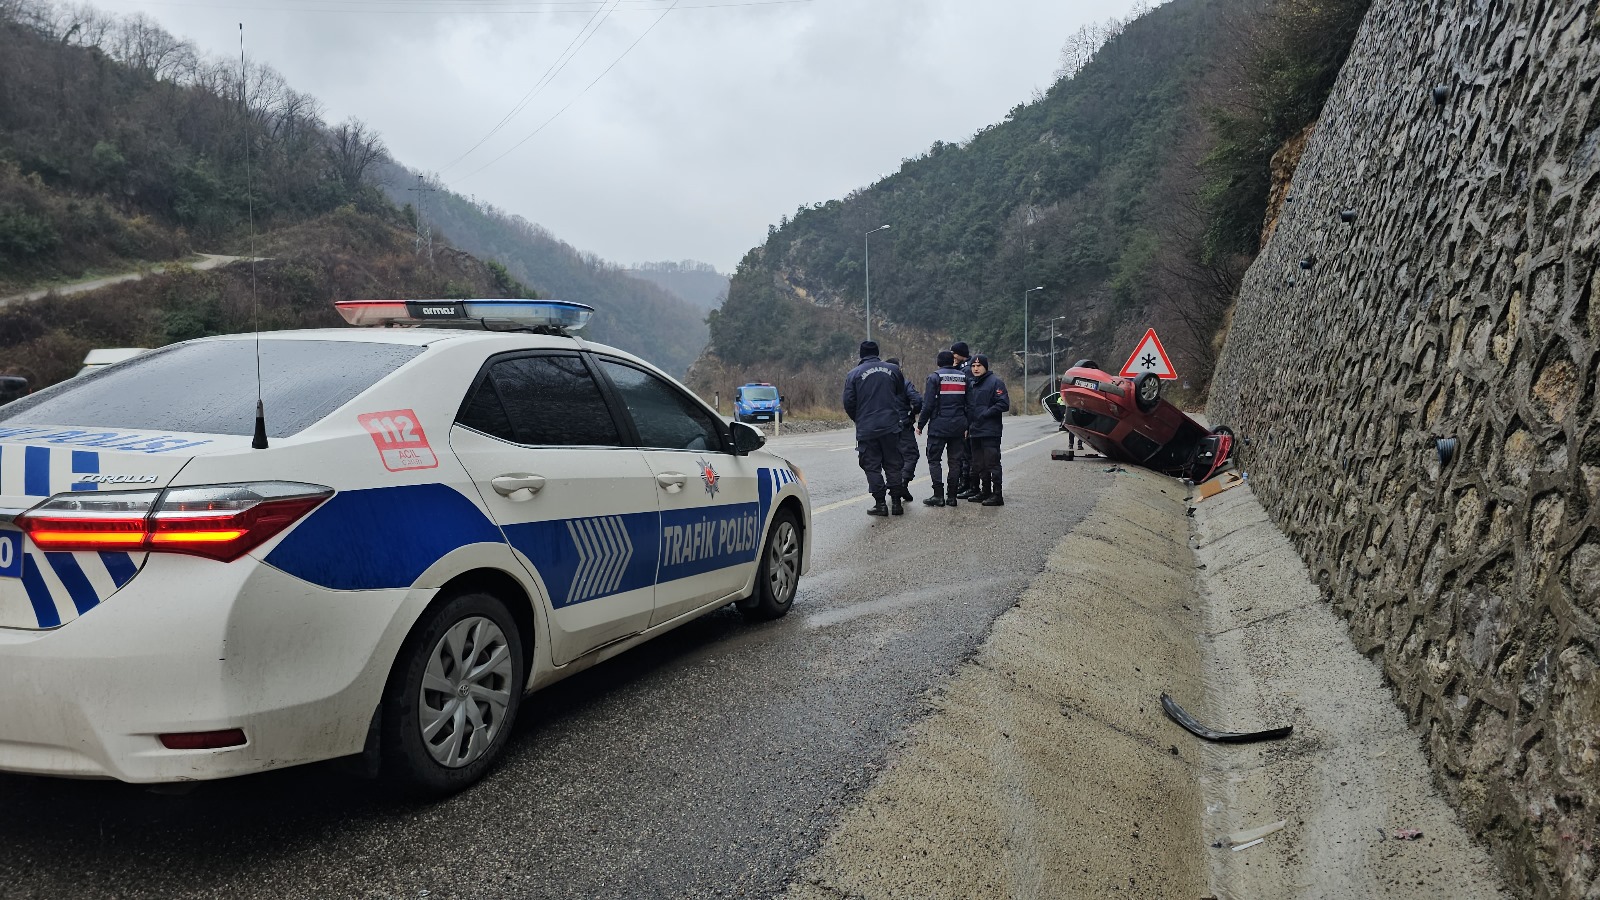 Zonguldak ilinde meydana gelen bir olayda, bir otomobil takla attı ve üç kişi yaralandı.